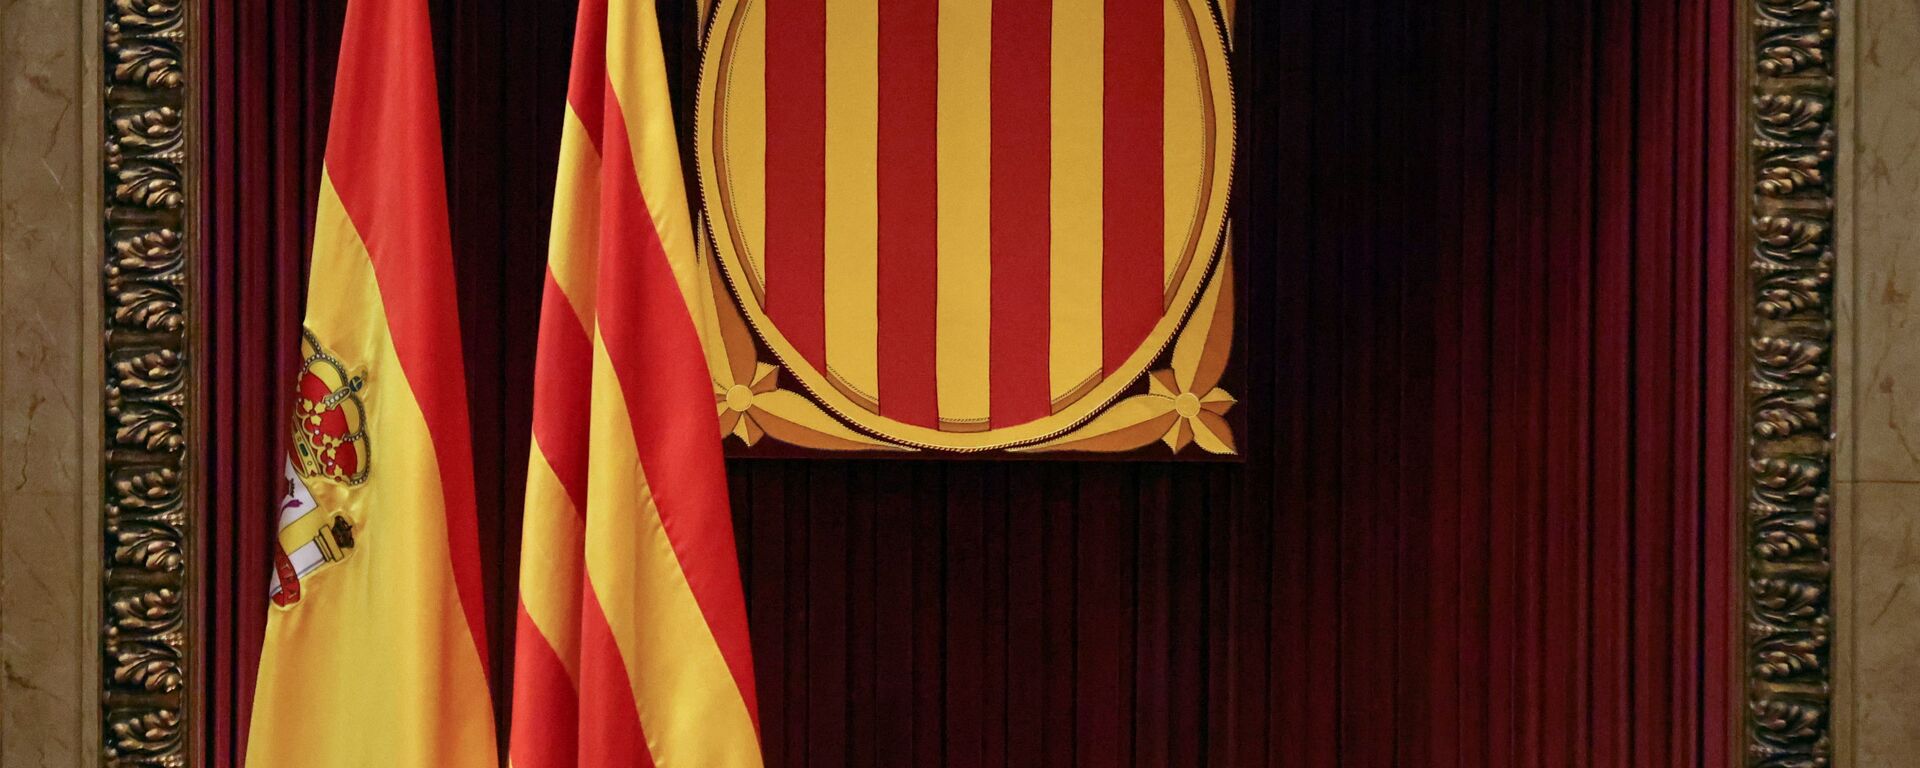 Banderas de España y Cataluña en el Parlamento catalán - Sputnik Mundo, 1920, 05.02.2021